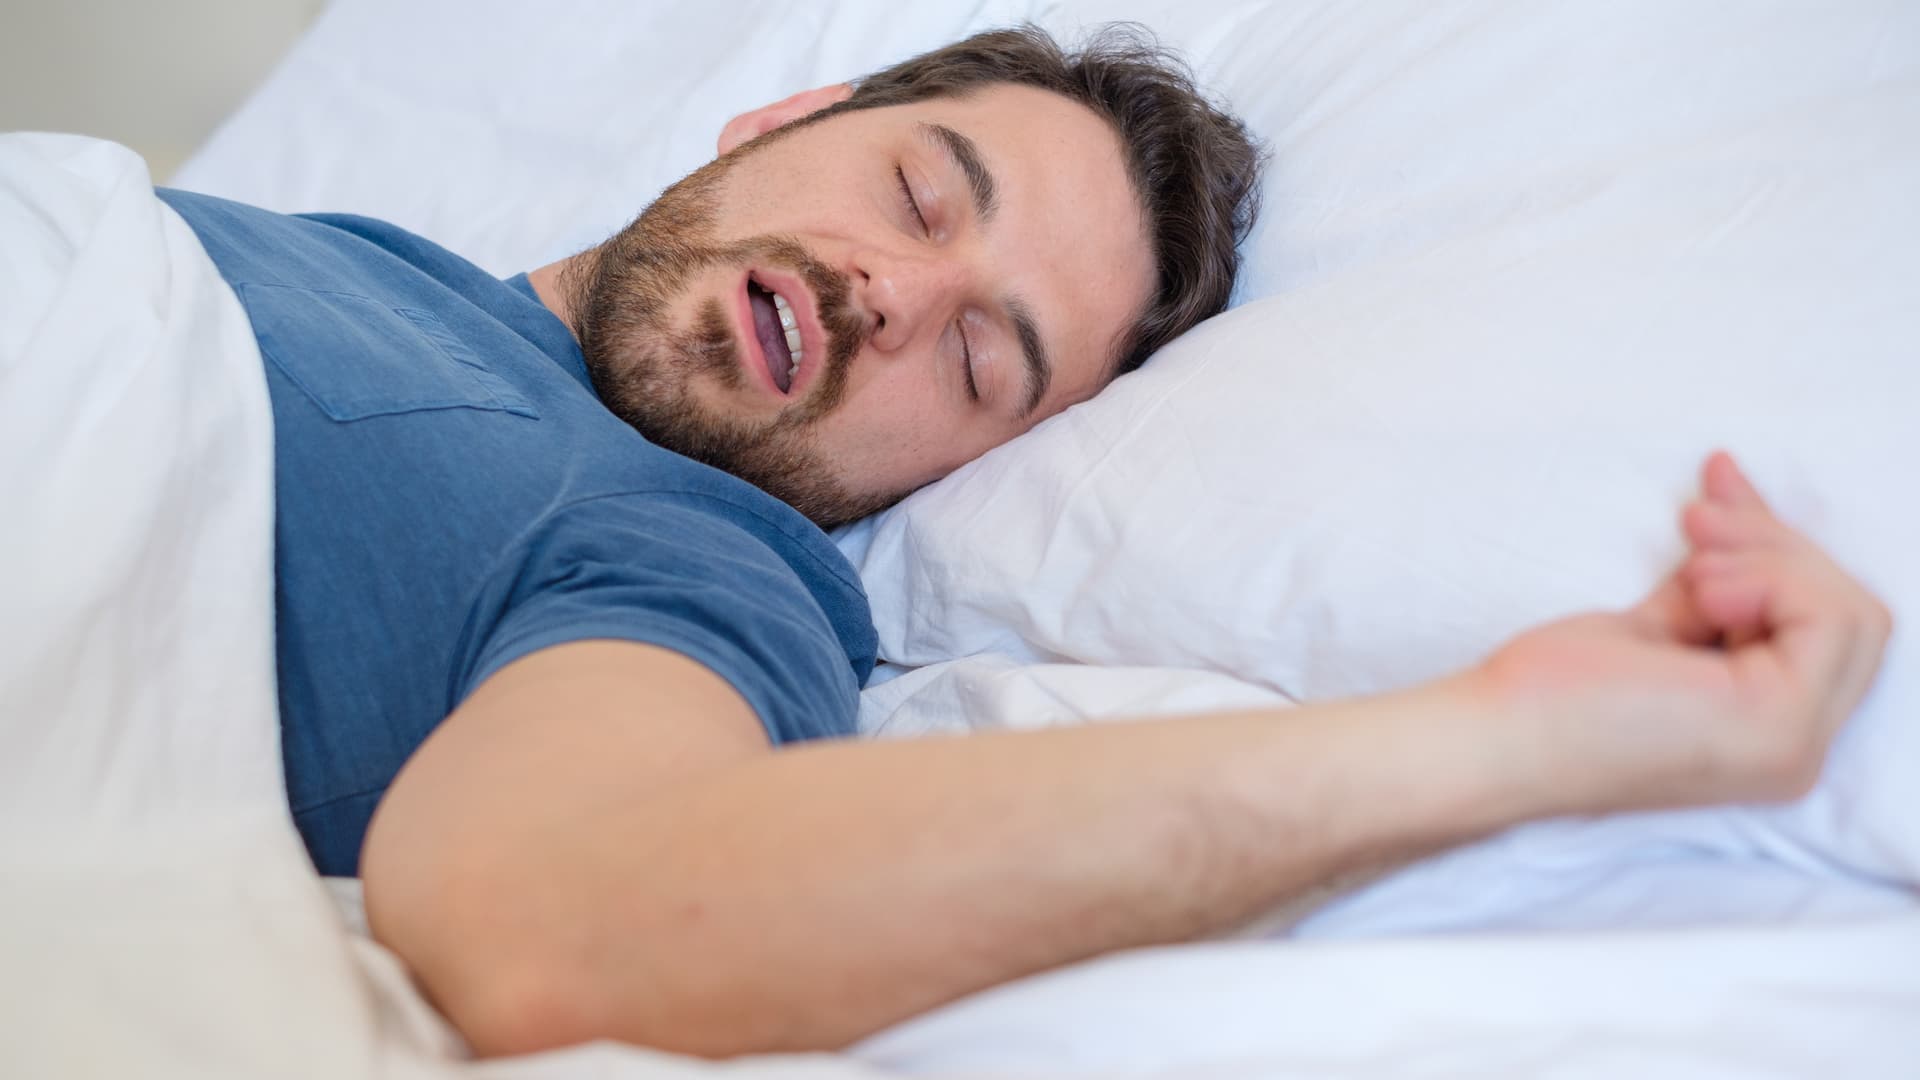 Do you have obstructive sleep apnea